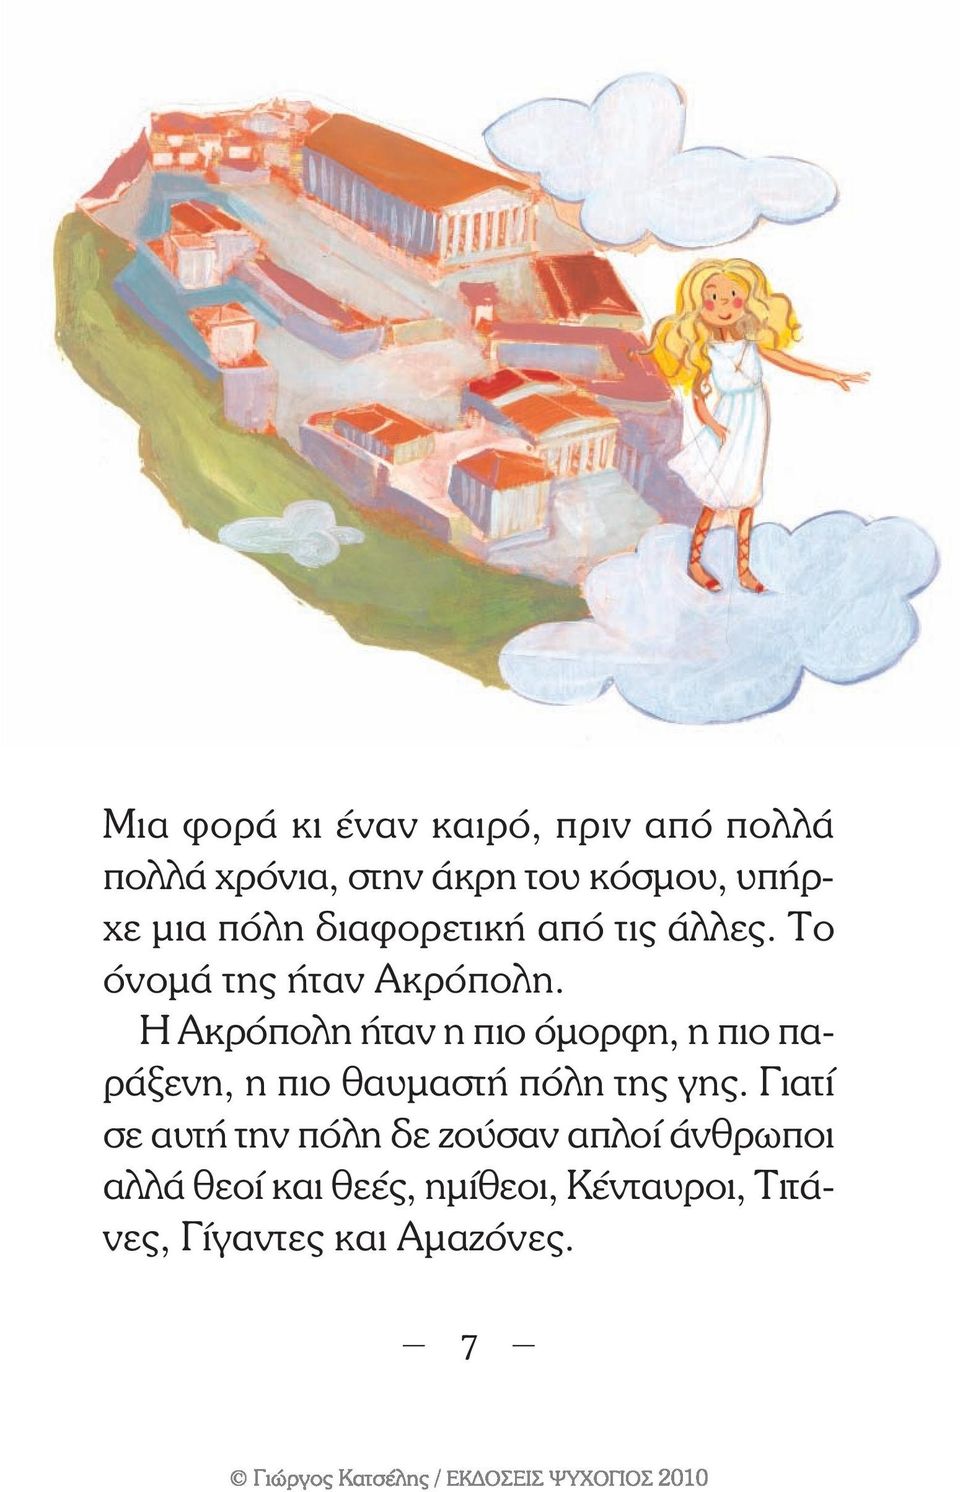 Η Ακρόπολη ήταν η πιο όµορφη, η πιο παράξενη, η πιο θαυµαστή πόλη της γης.